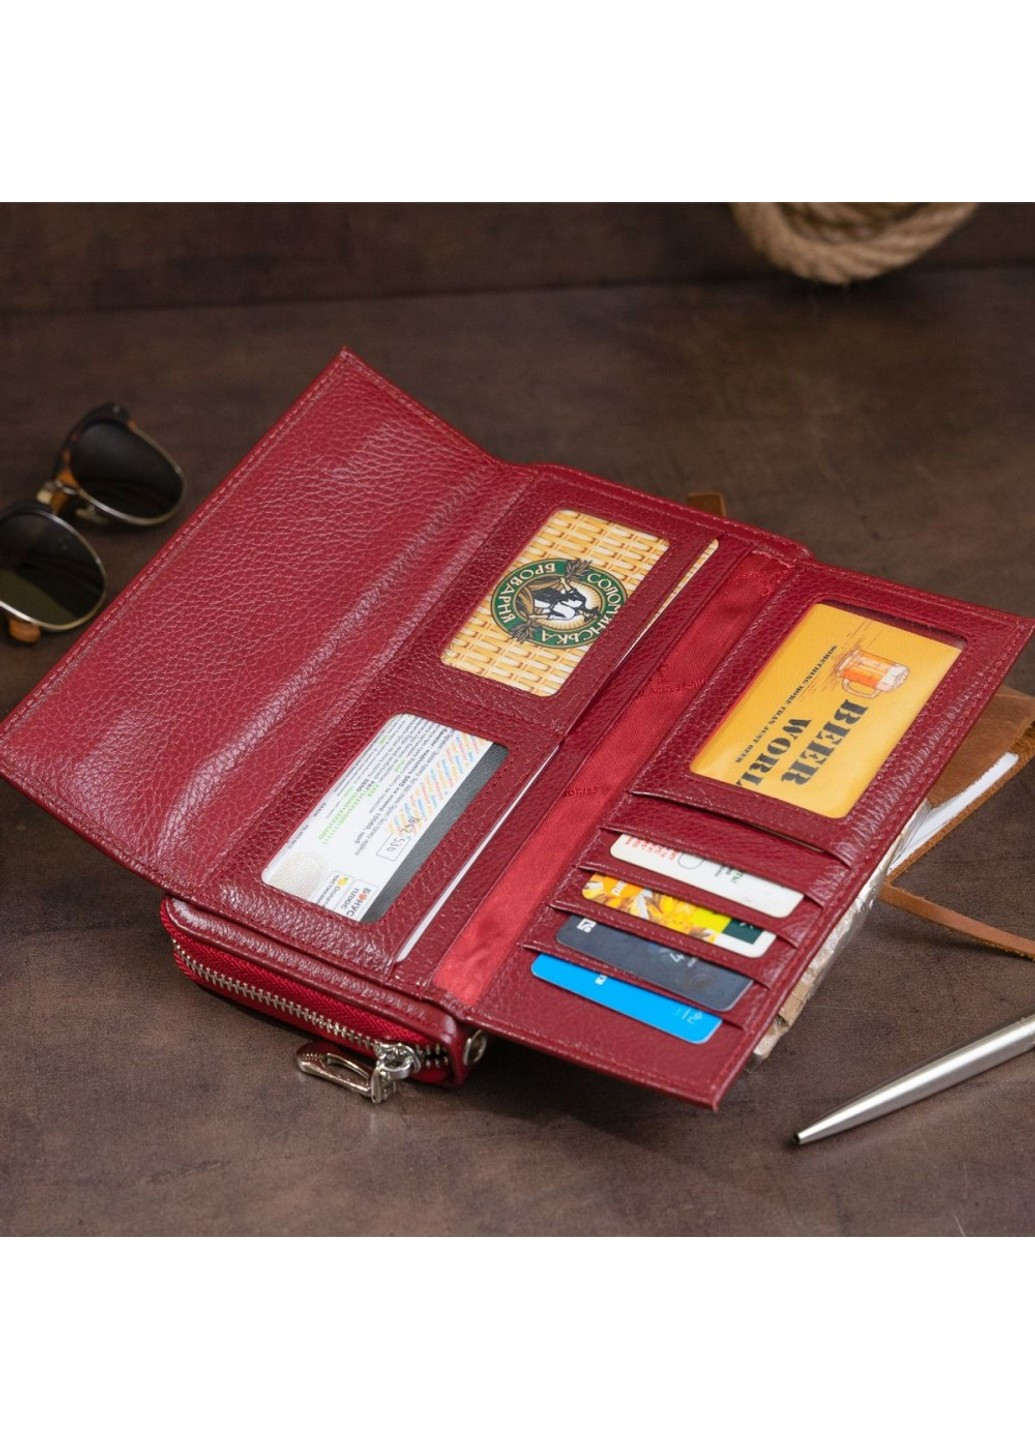 Жіночий шкіряний гаманець ST Leather 19293 Бордовий ST Leather Accessories (262453796)